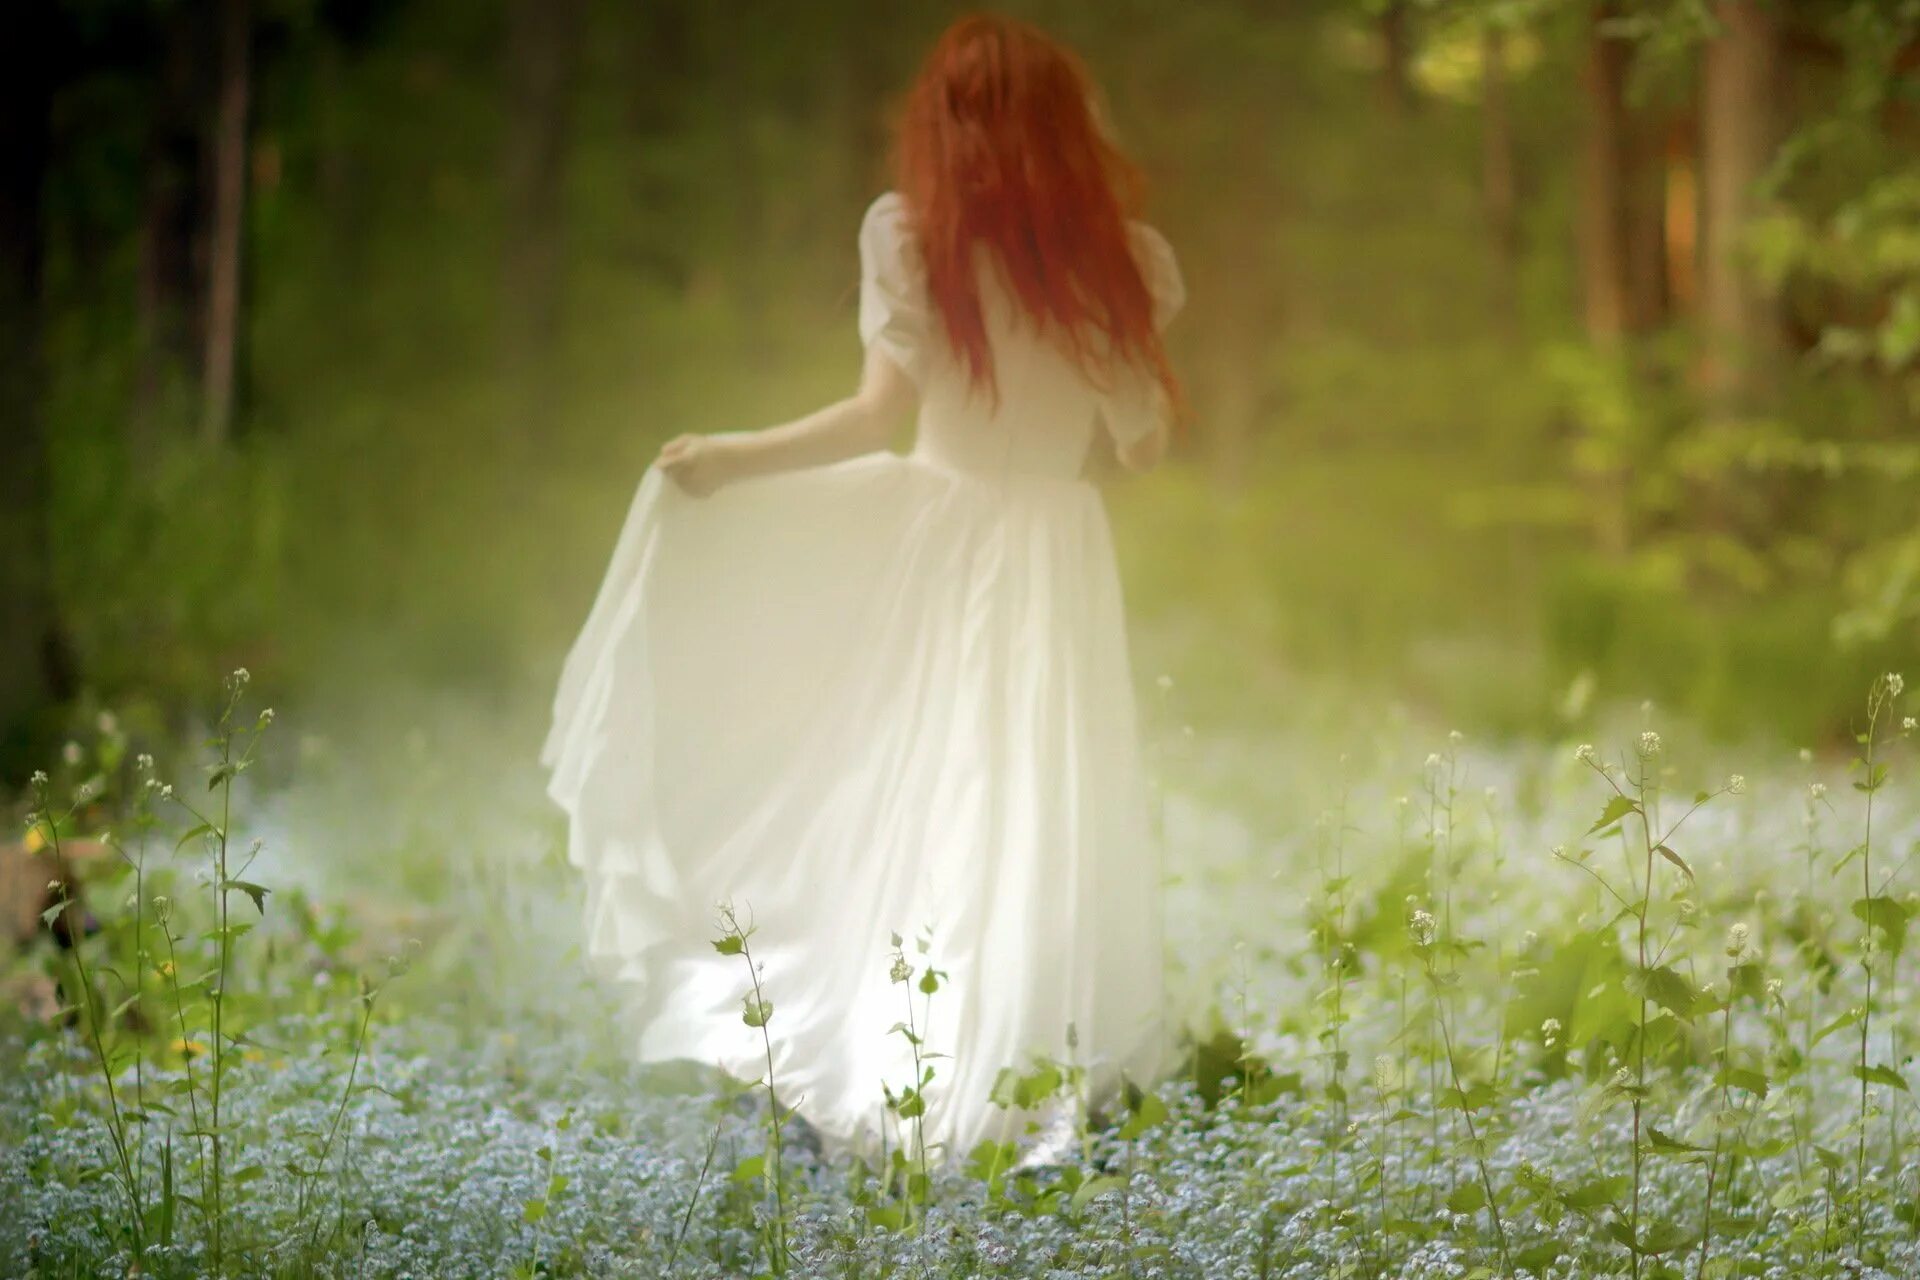 Душа эрны была ясна и невинна. Рыжая девушка в белом платье. Рыжая девушка в платье. Девушка в длинном платье. Девушка в белом платье в лесу.